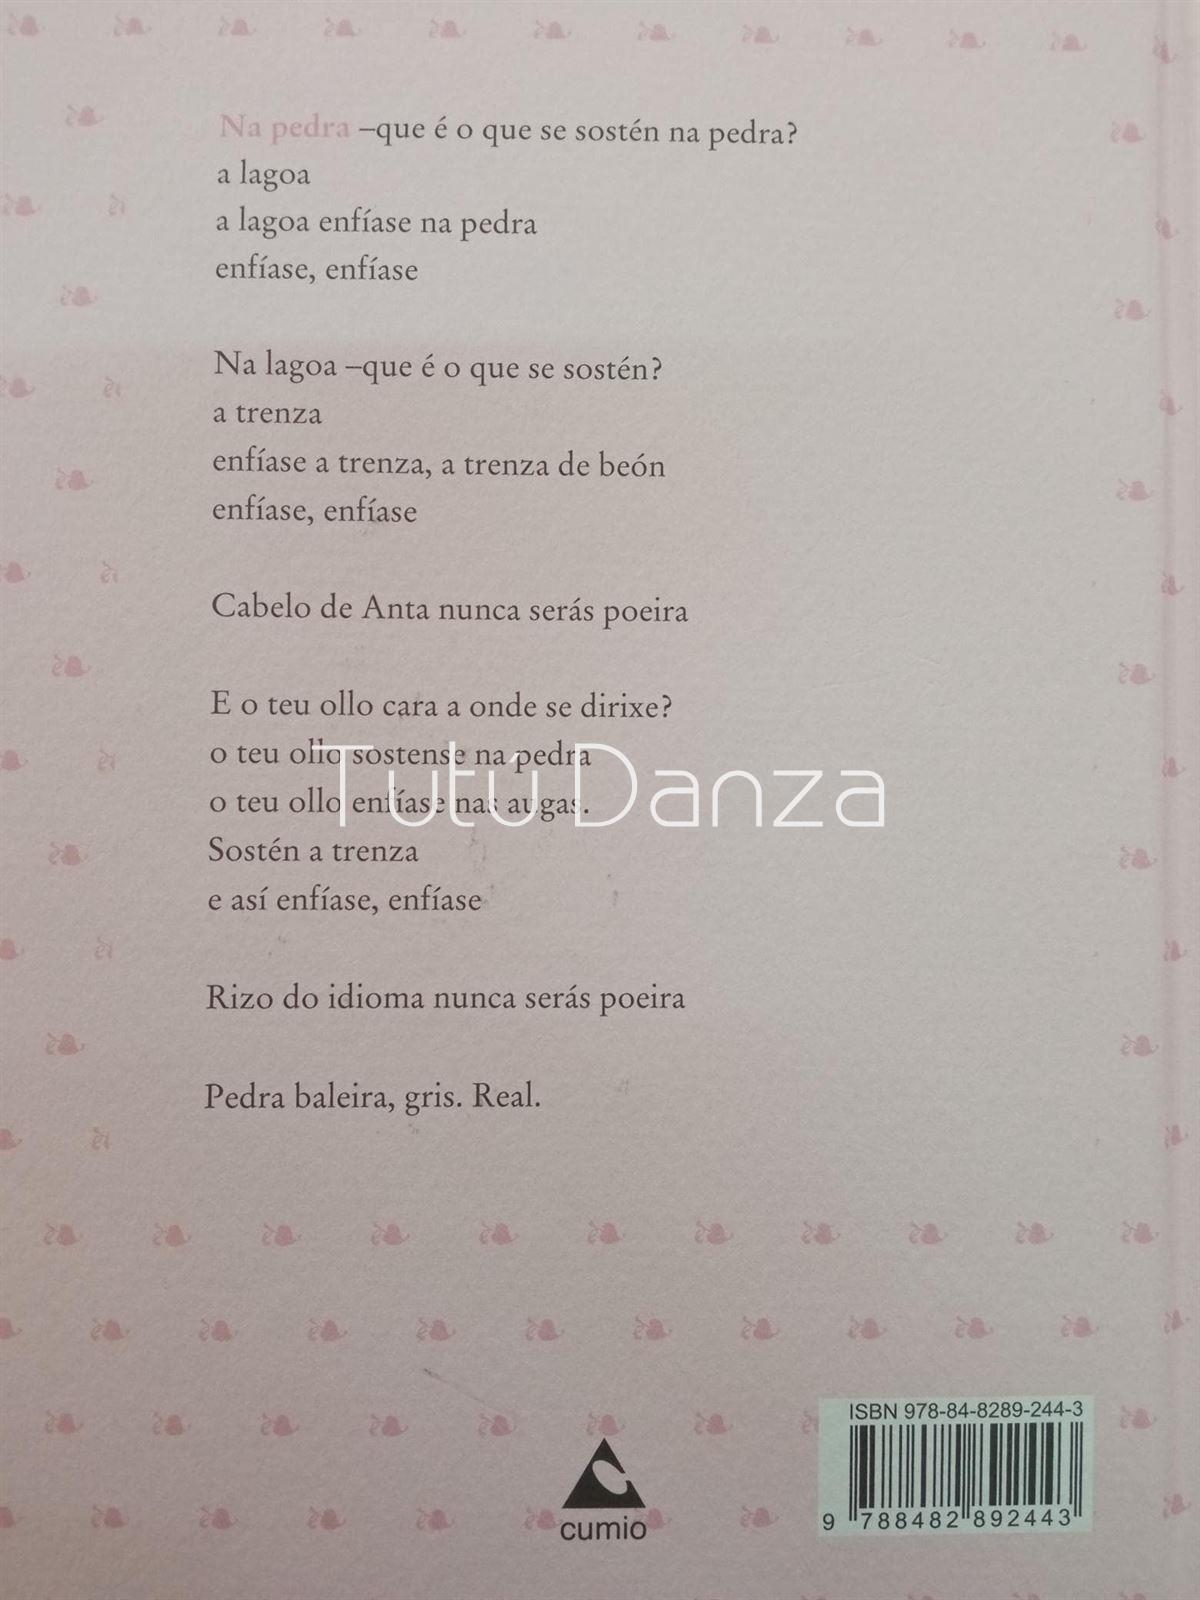 Libro poesía Chus Pato - Imagen 2